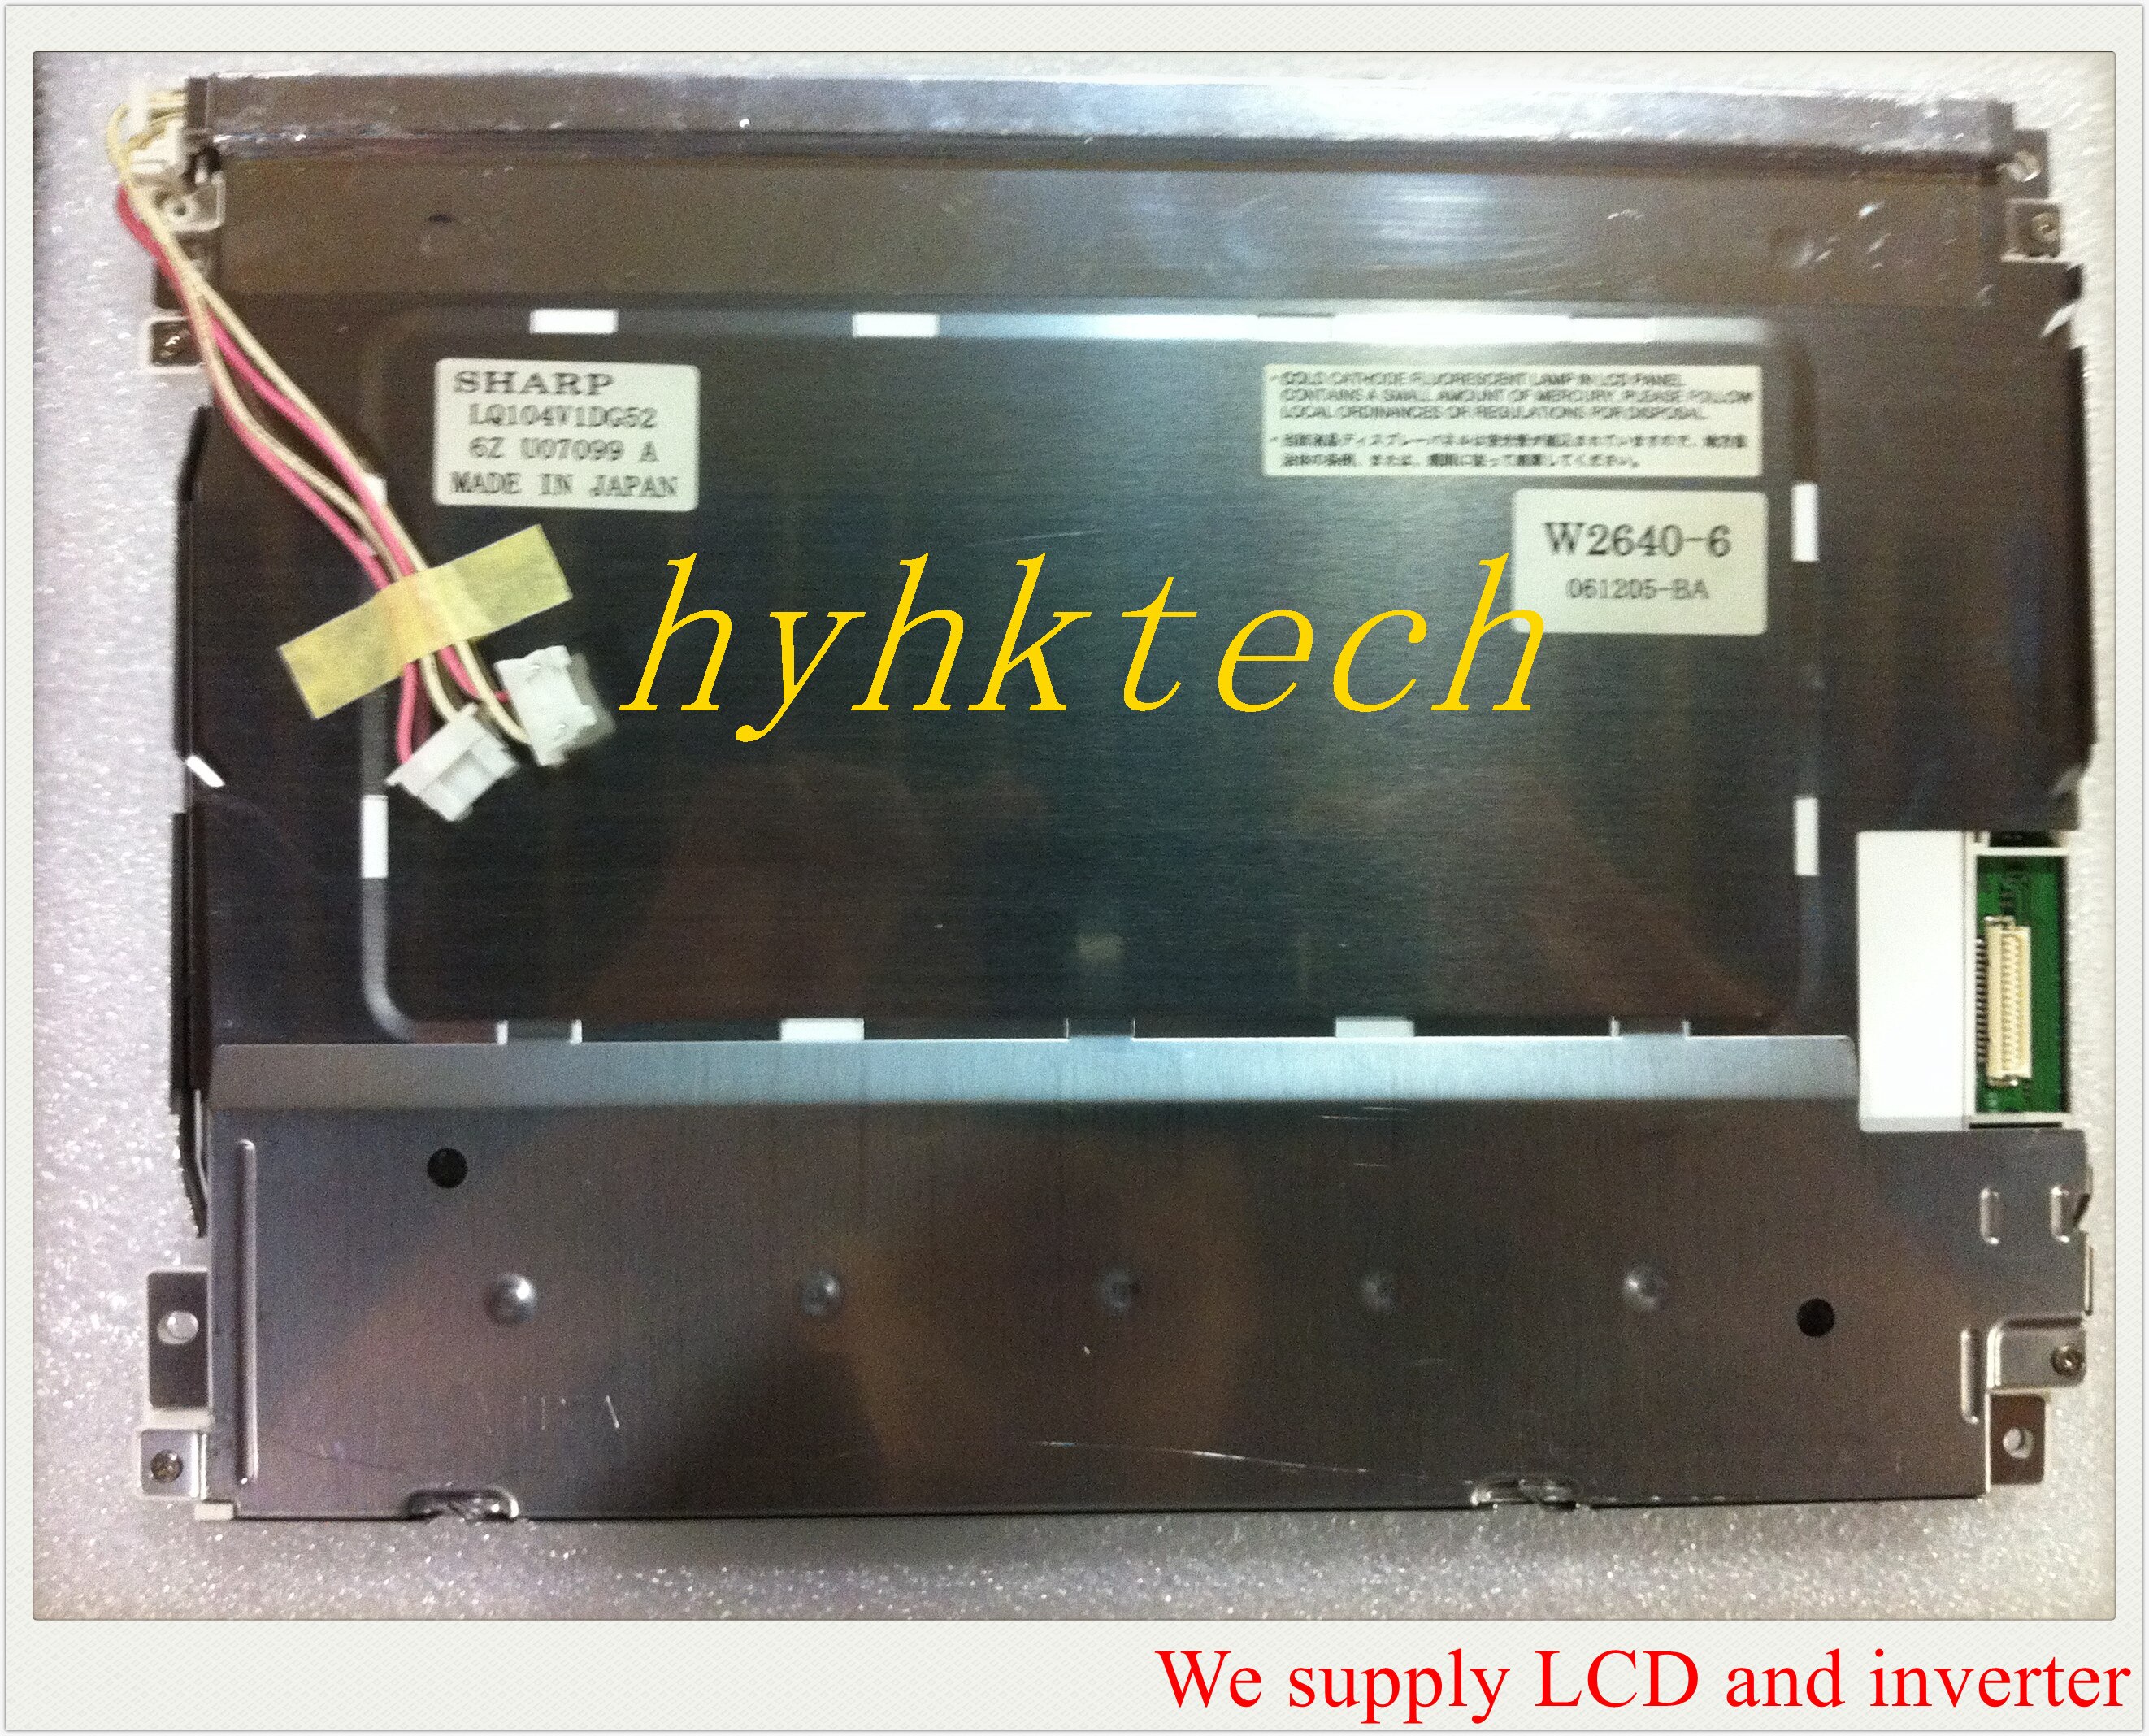  LCD, LQ104V1DG52, LQ104V1DG51, 10.4 ġ, ..